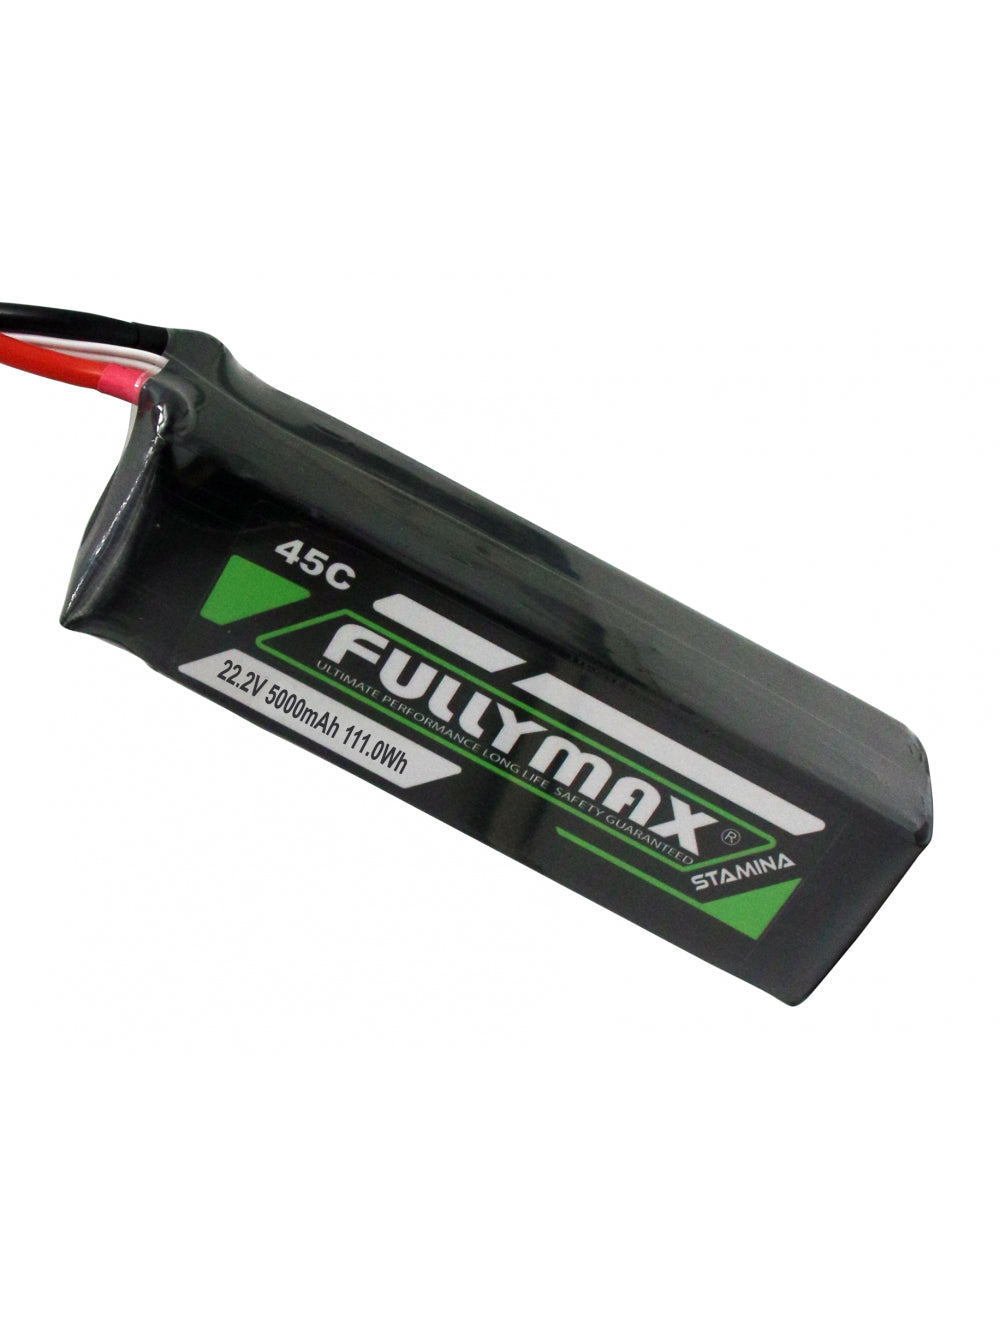 Overlander Fullymax 5000mAh 22.2V 6S 45C LiPo Battery - EC5 Connector 3448